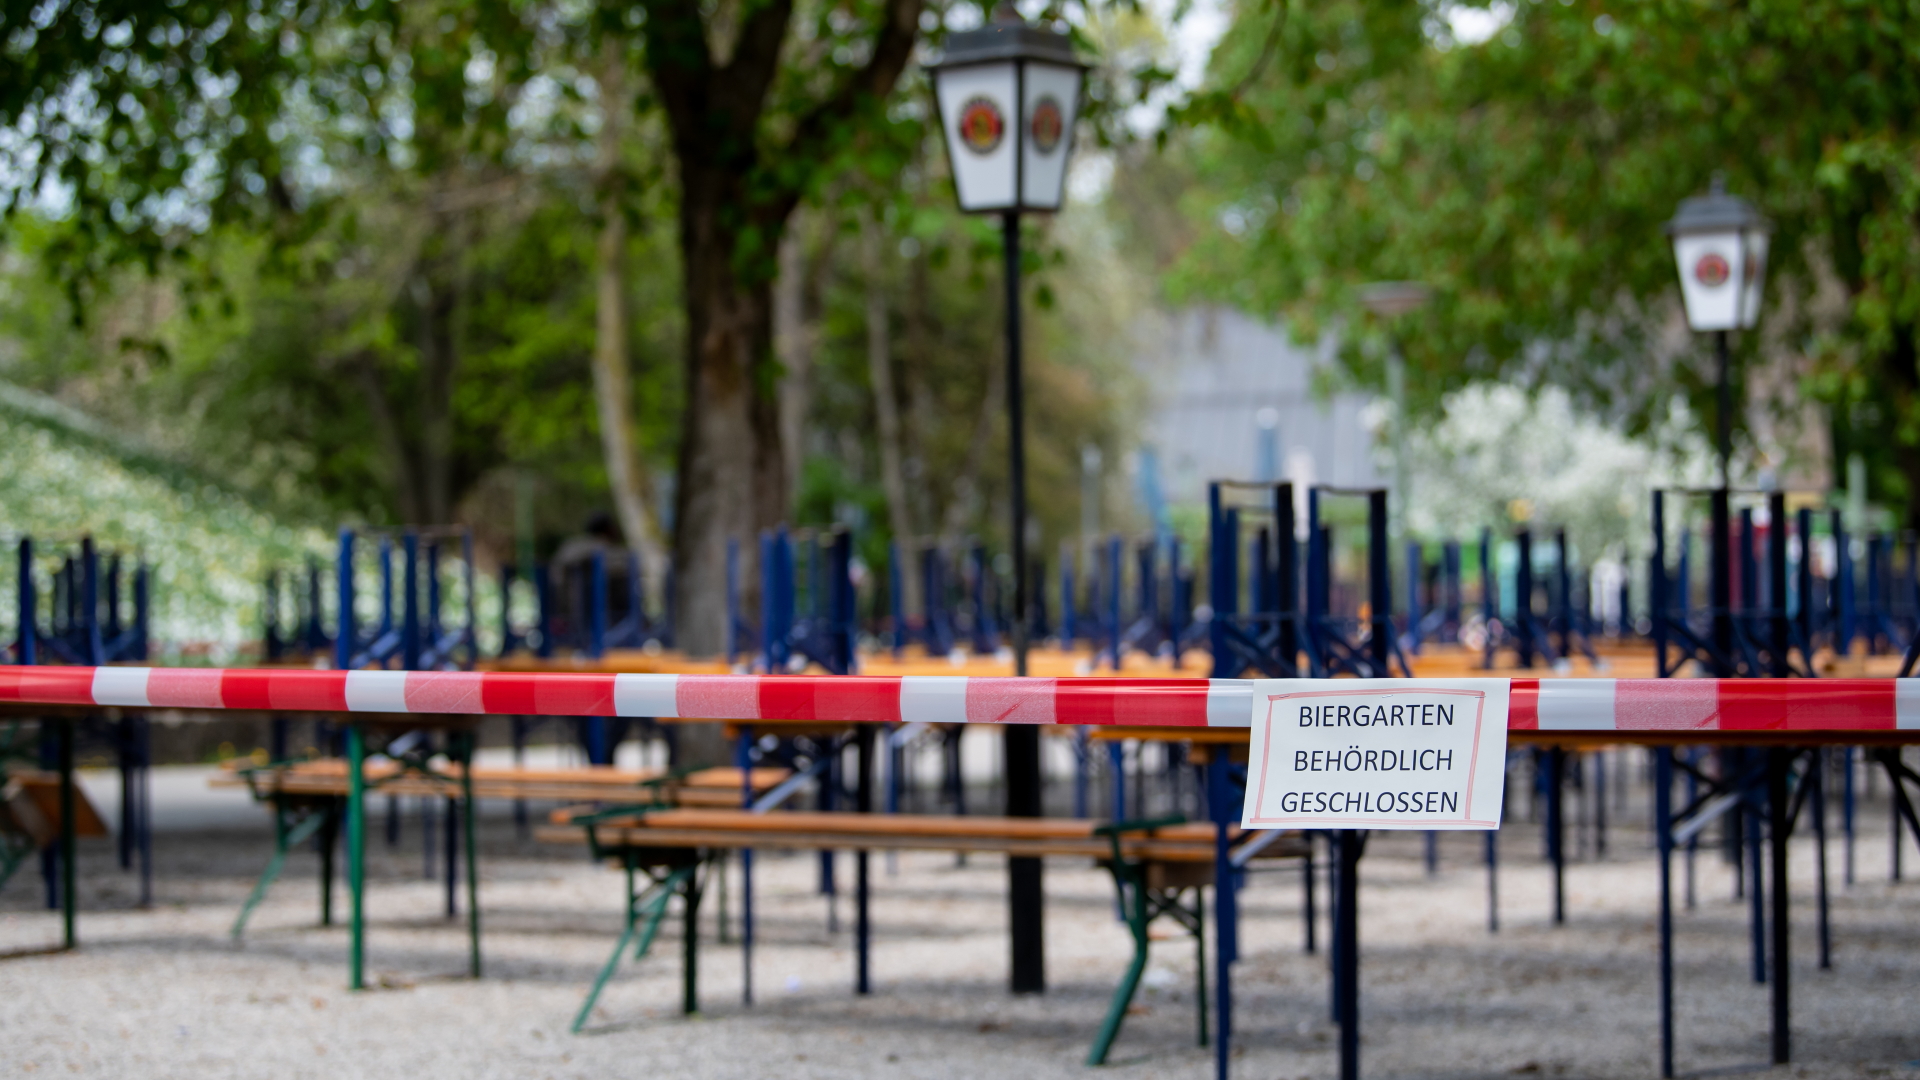 Geschlossener Biergarten in München | dpa